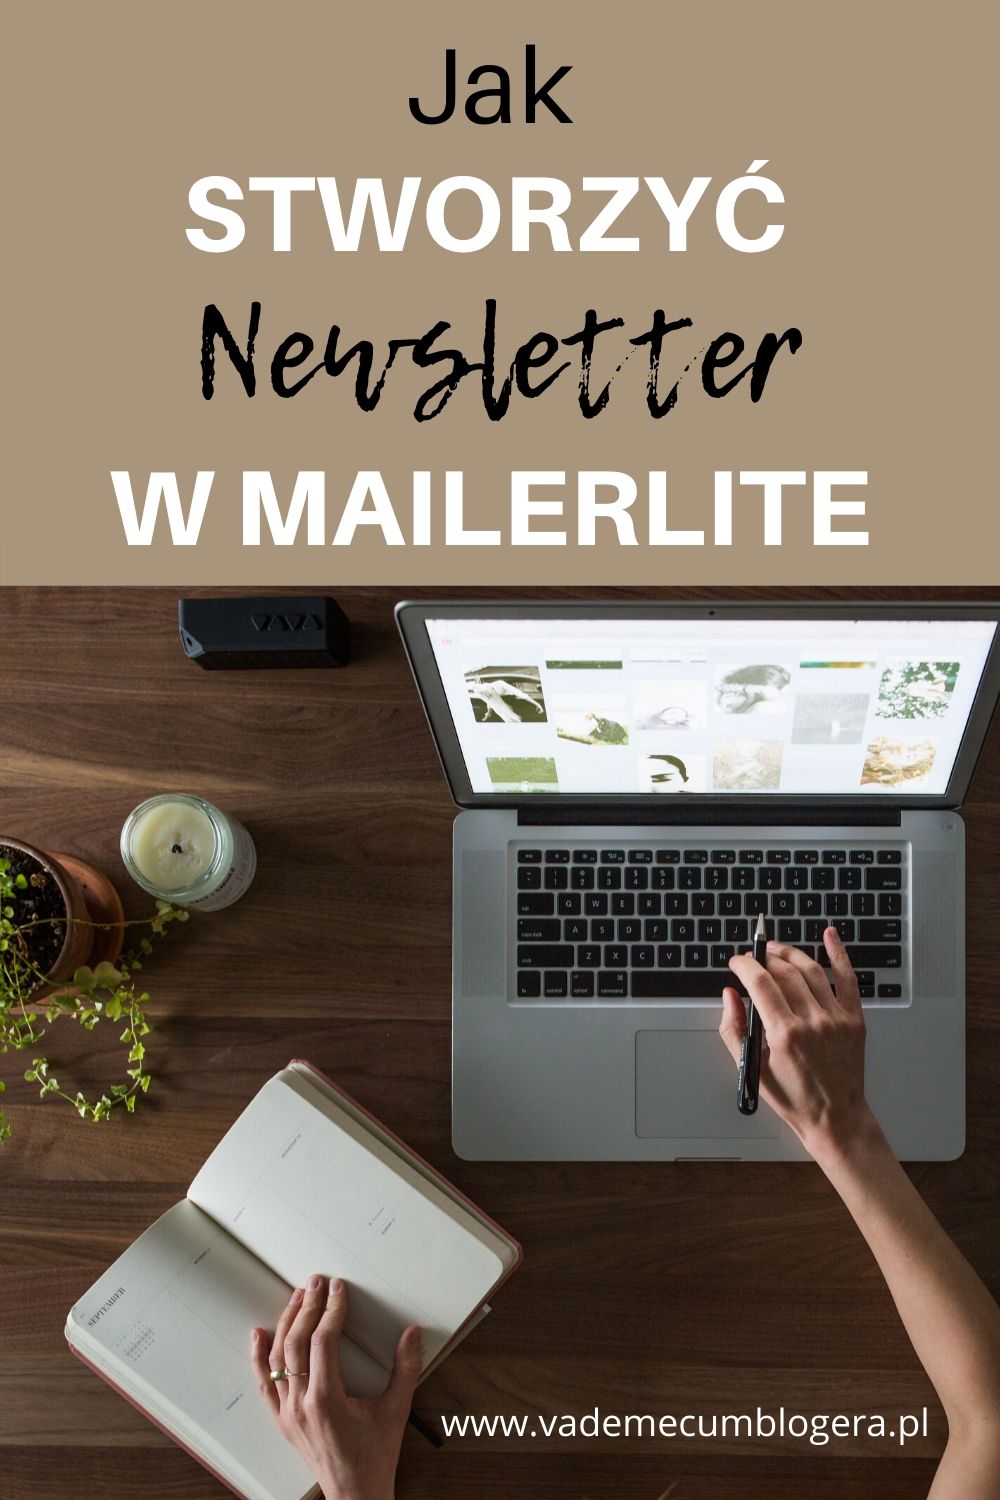 Jak Stworzyć Newsletter W Mailerlite Odc2? Jak stworzyć i osadzić na stronie formularz zapisu na newsletter przy użyciu MailerLite.